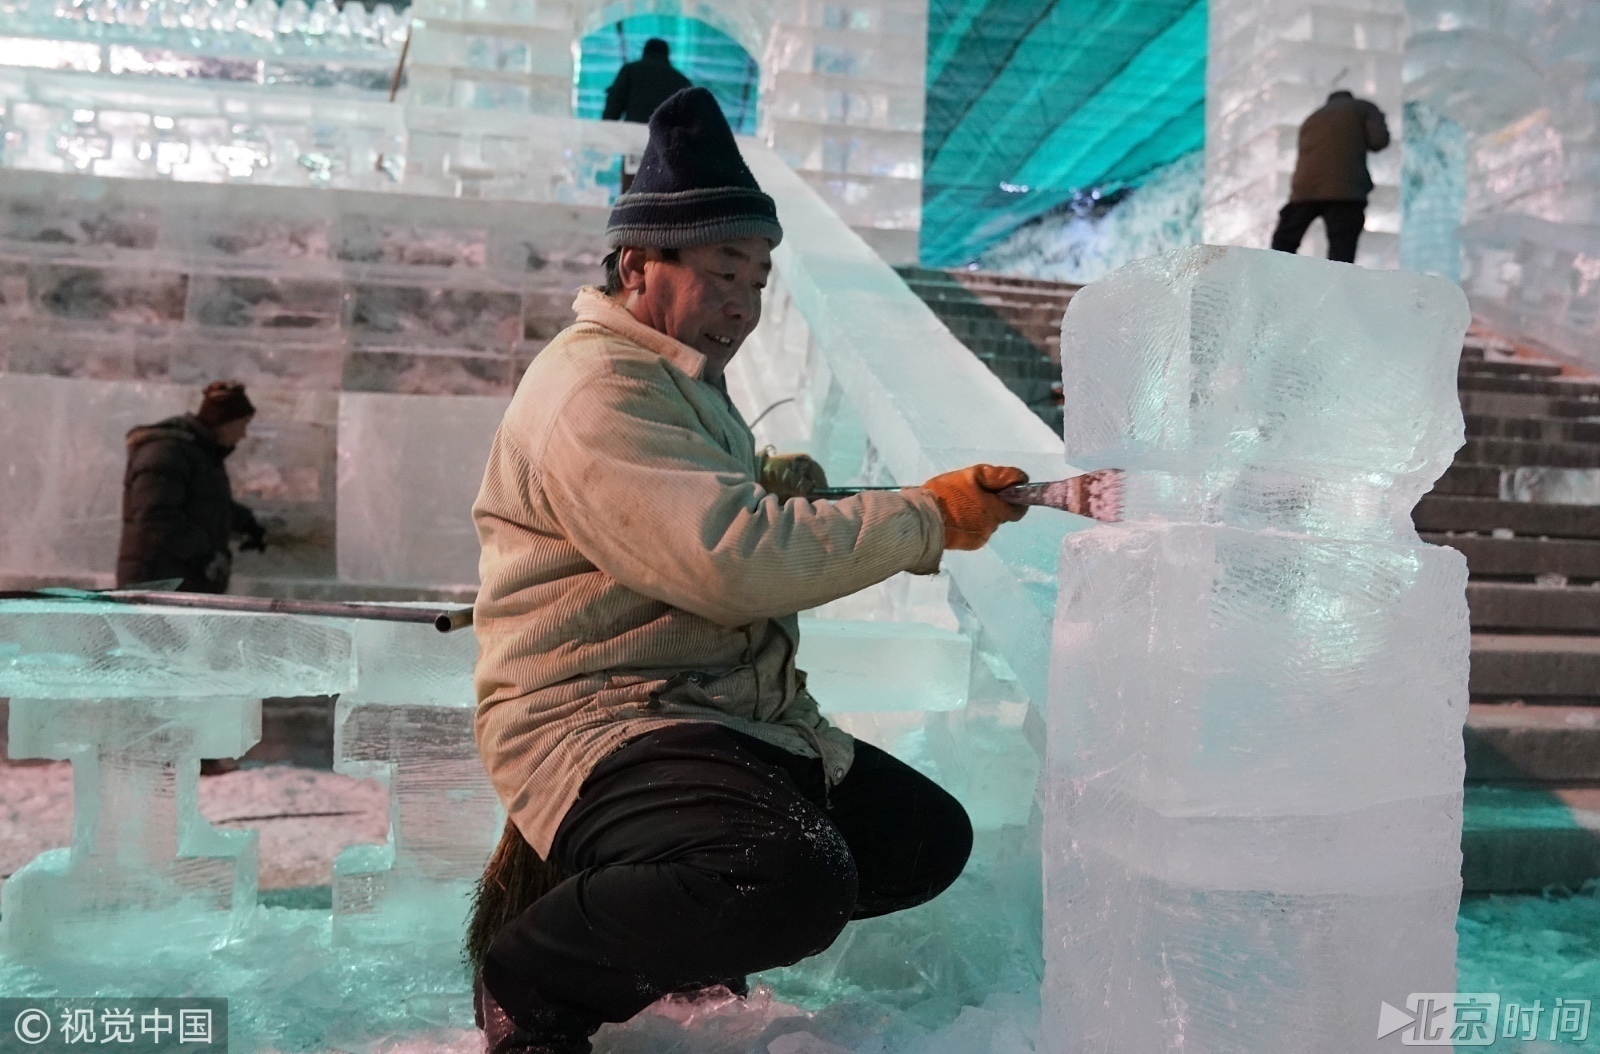 届时将有几位国内外冰雕大师在这里完成奇思妙想的冰雪雕刻作品